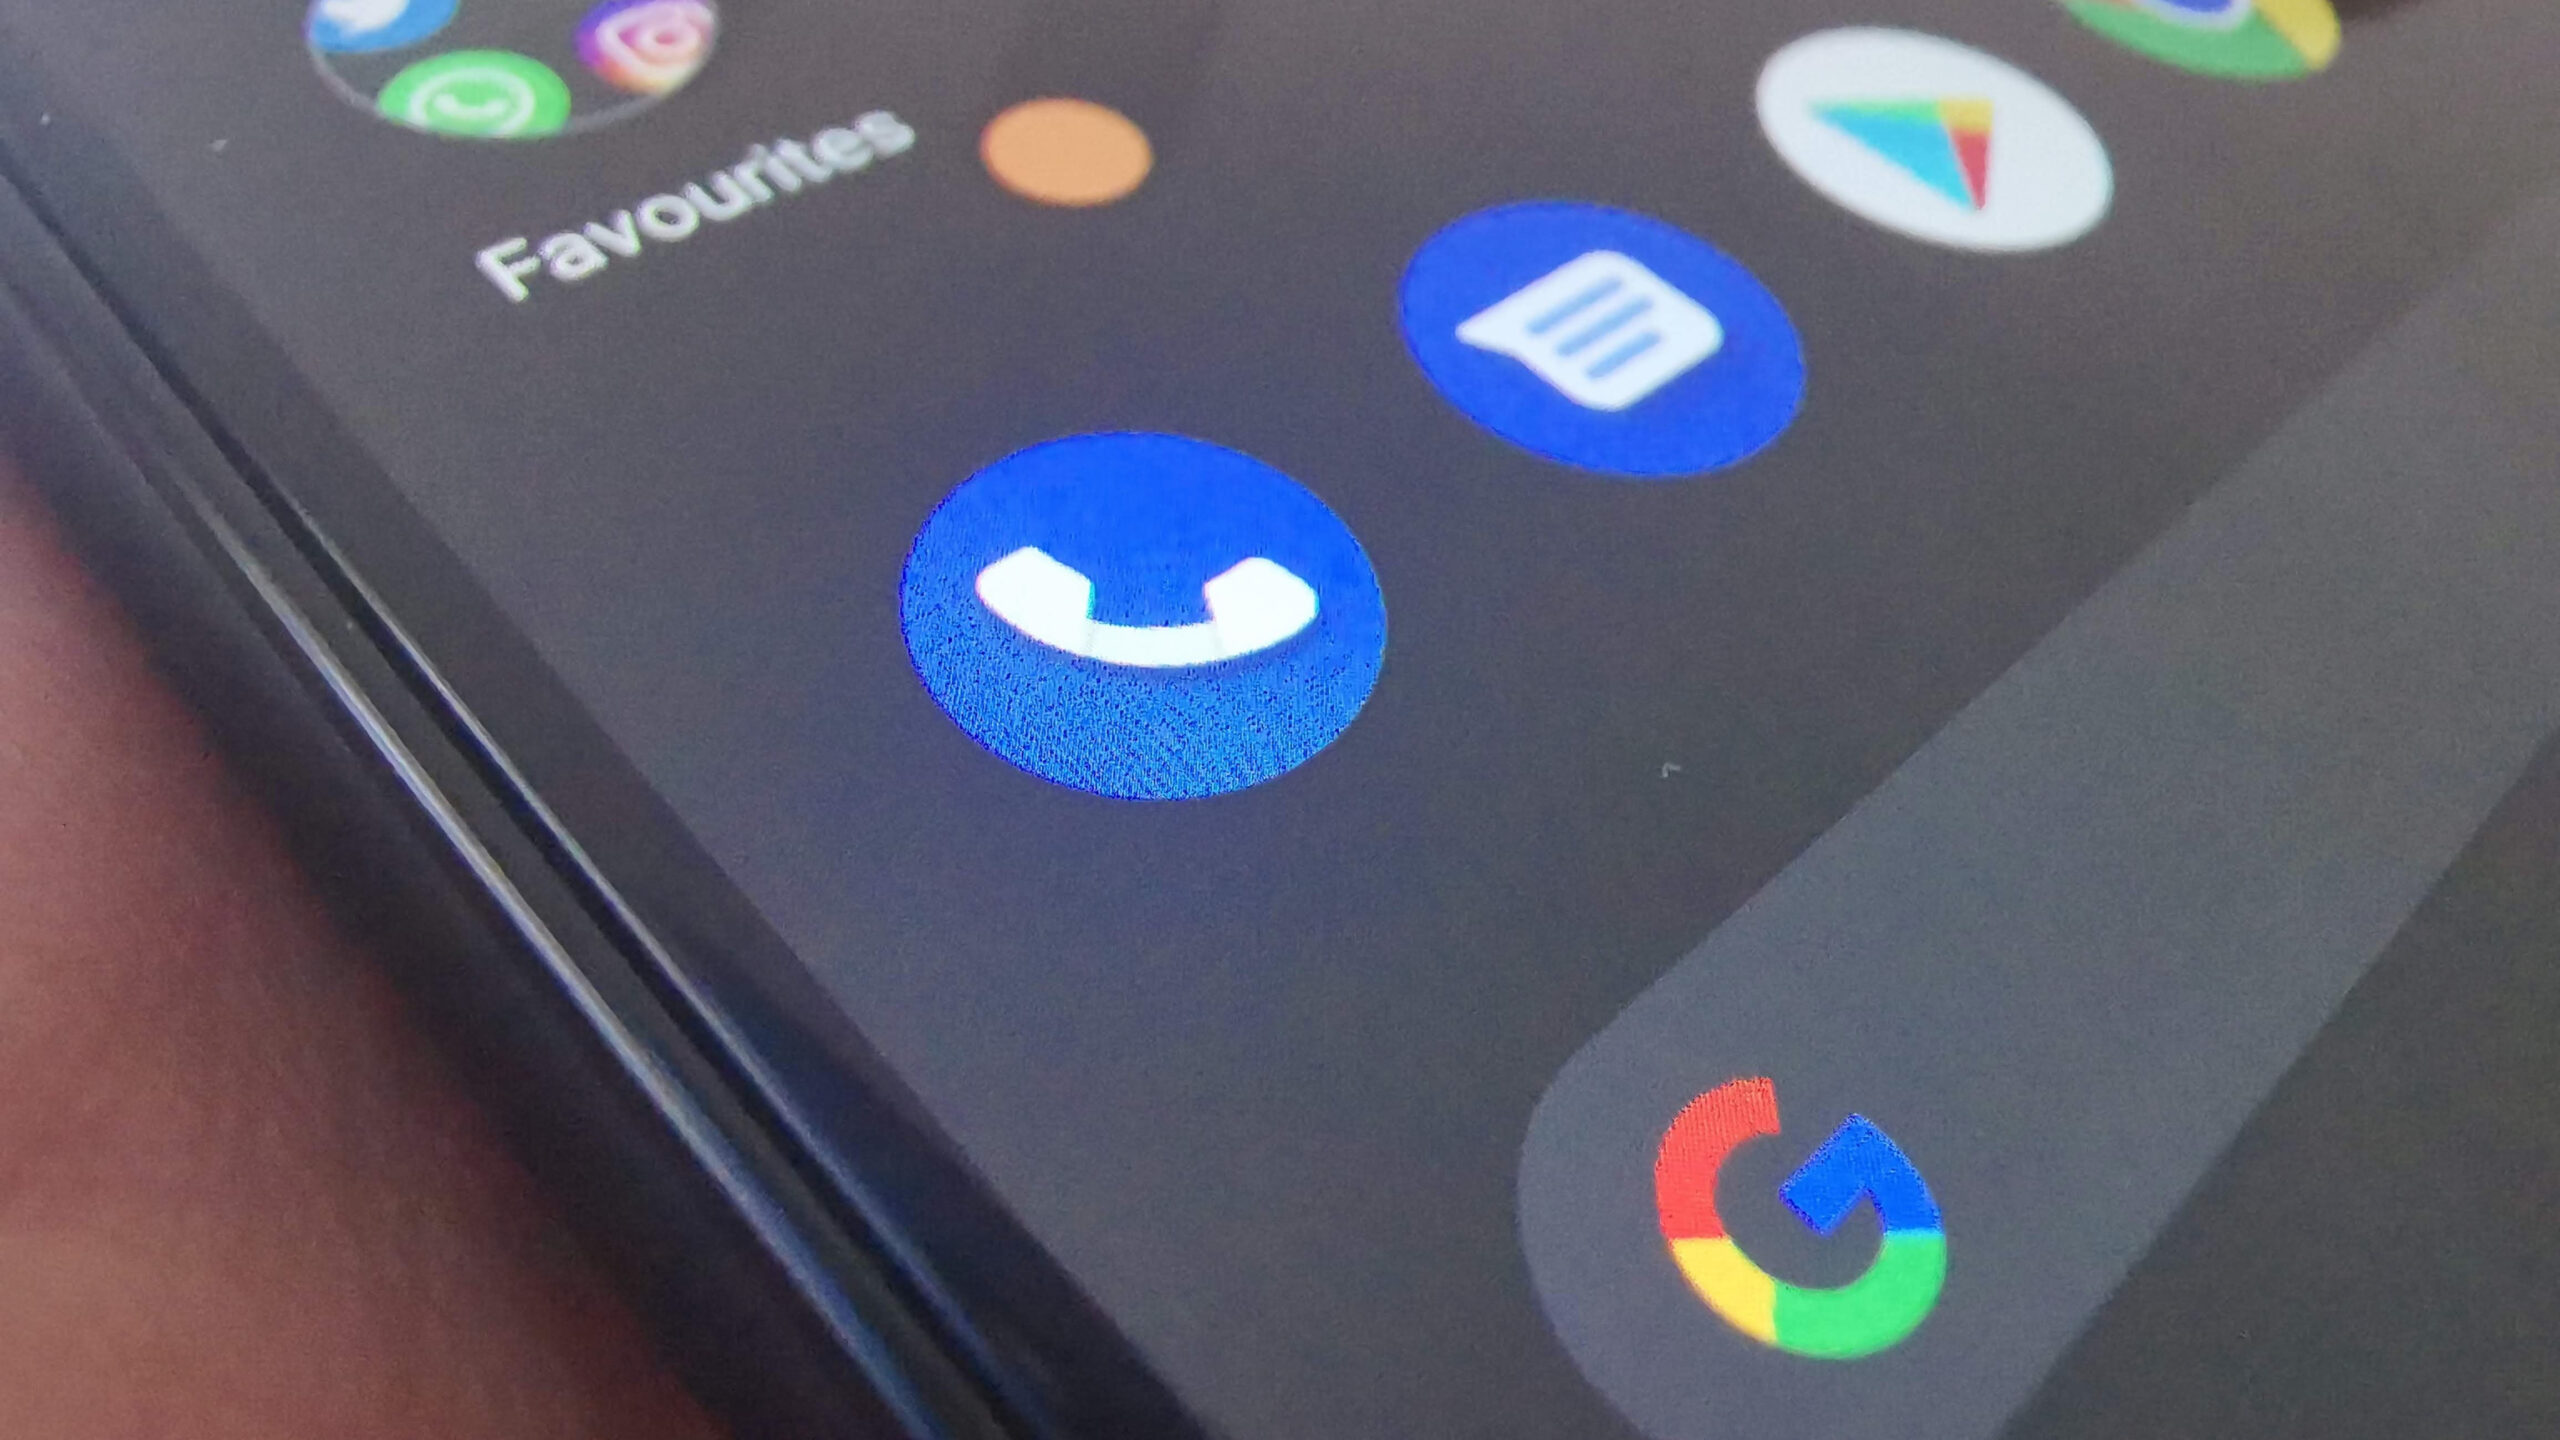 Google un numéro : L'application Google Phone teste une nouvelle fonctionnalité : la recherche d'un numéro inconnu.